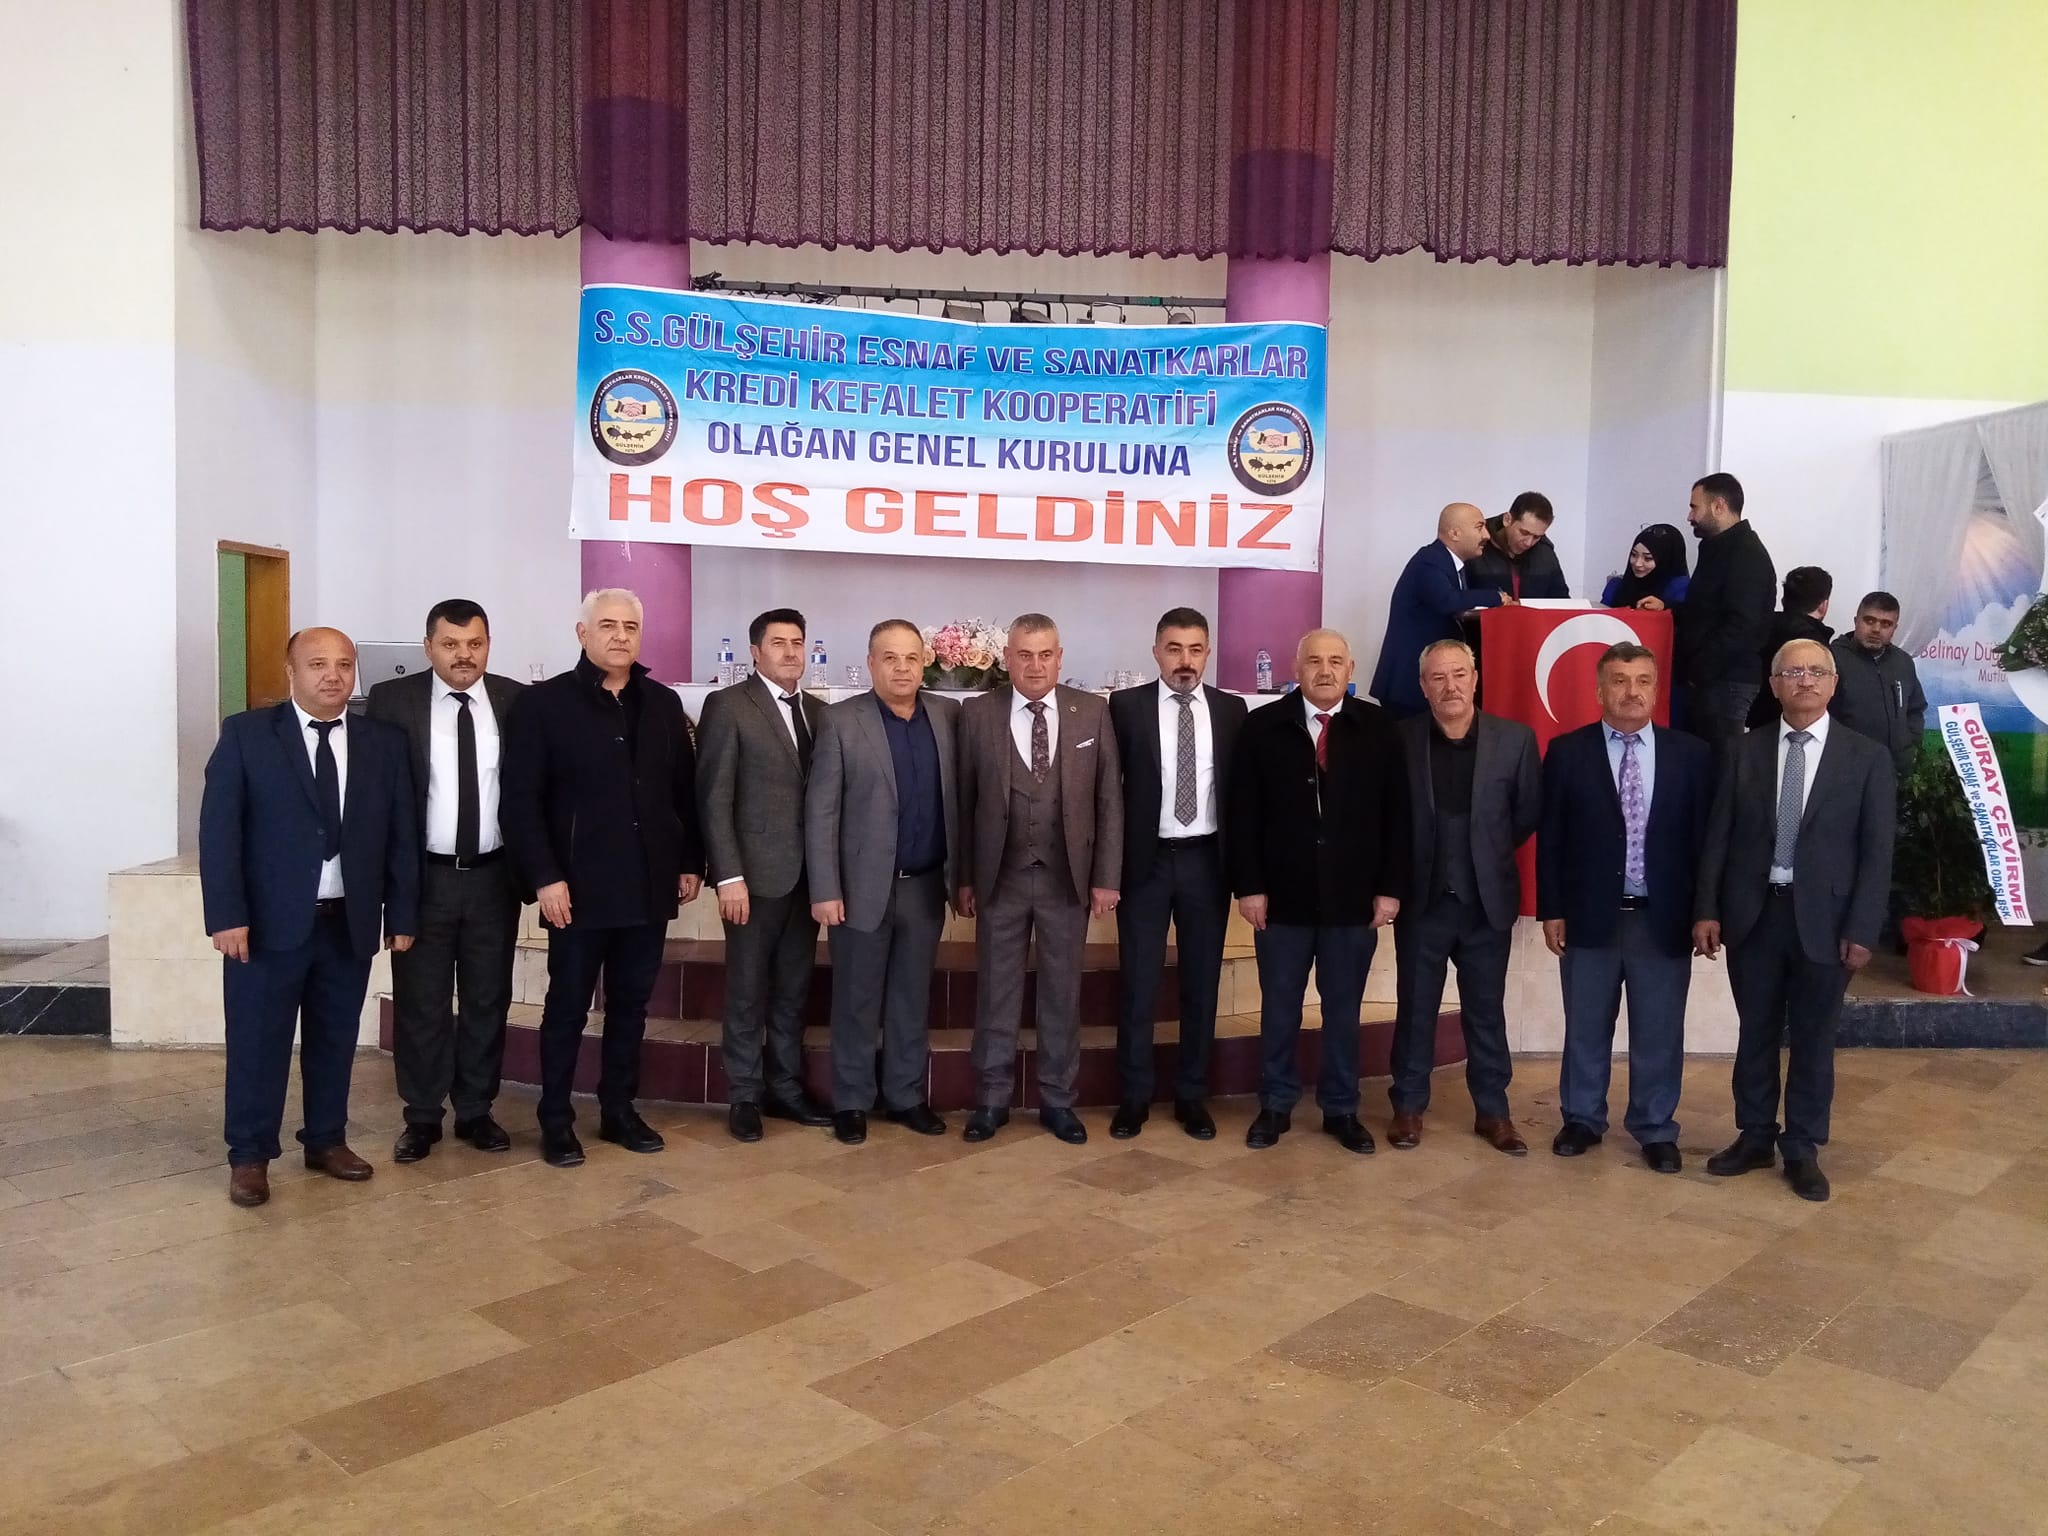 Gülşehir Esnaf ve Sanatkarlar Kredi ve Kefalet Kooperatifi Genel Kurulunda Gürlek, güven tazeledi